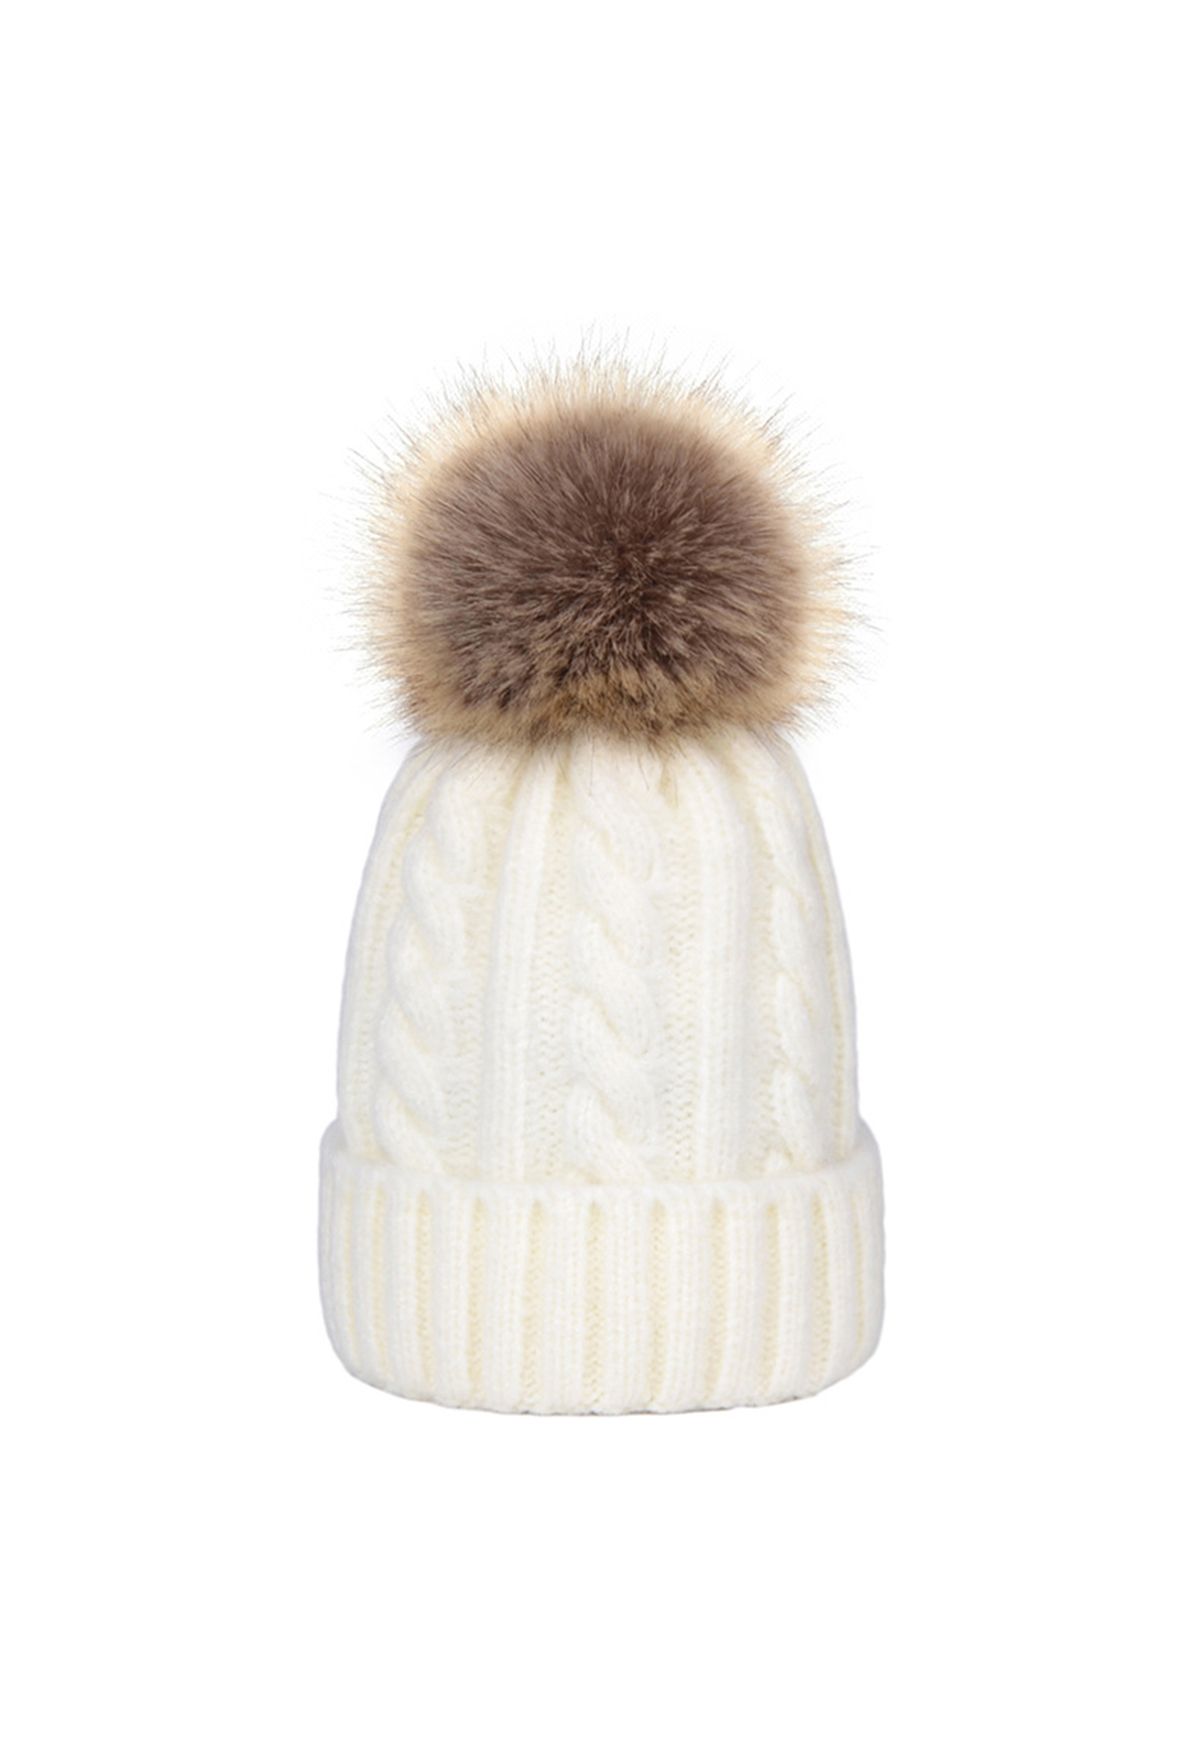 Braid Knit Pom-Pom Beanie Hat in Ivory